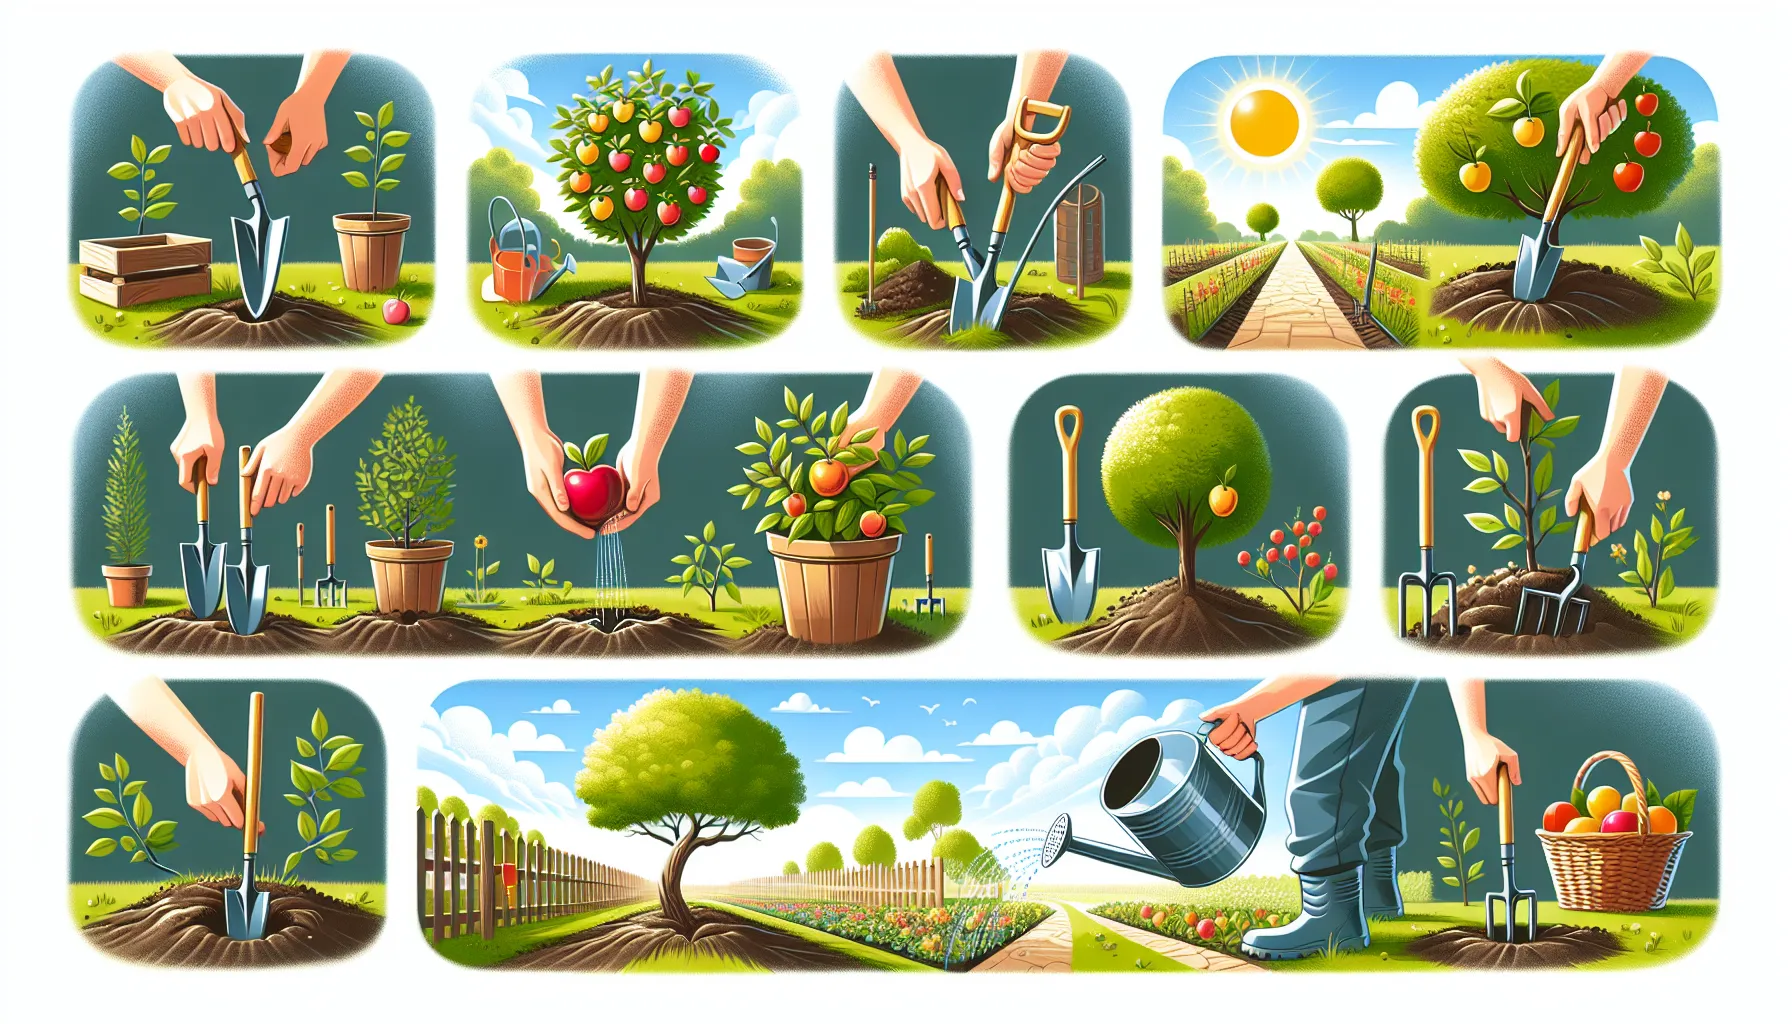 Imagen de un paso a paso ilustrado sobre cómo plantar árboles frutales en un jardín.